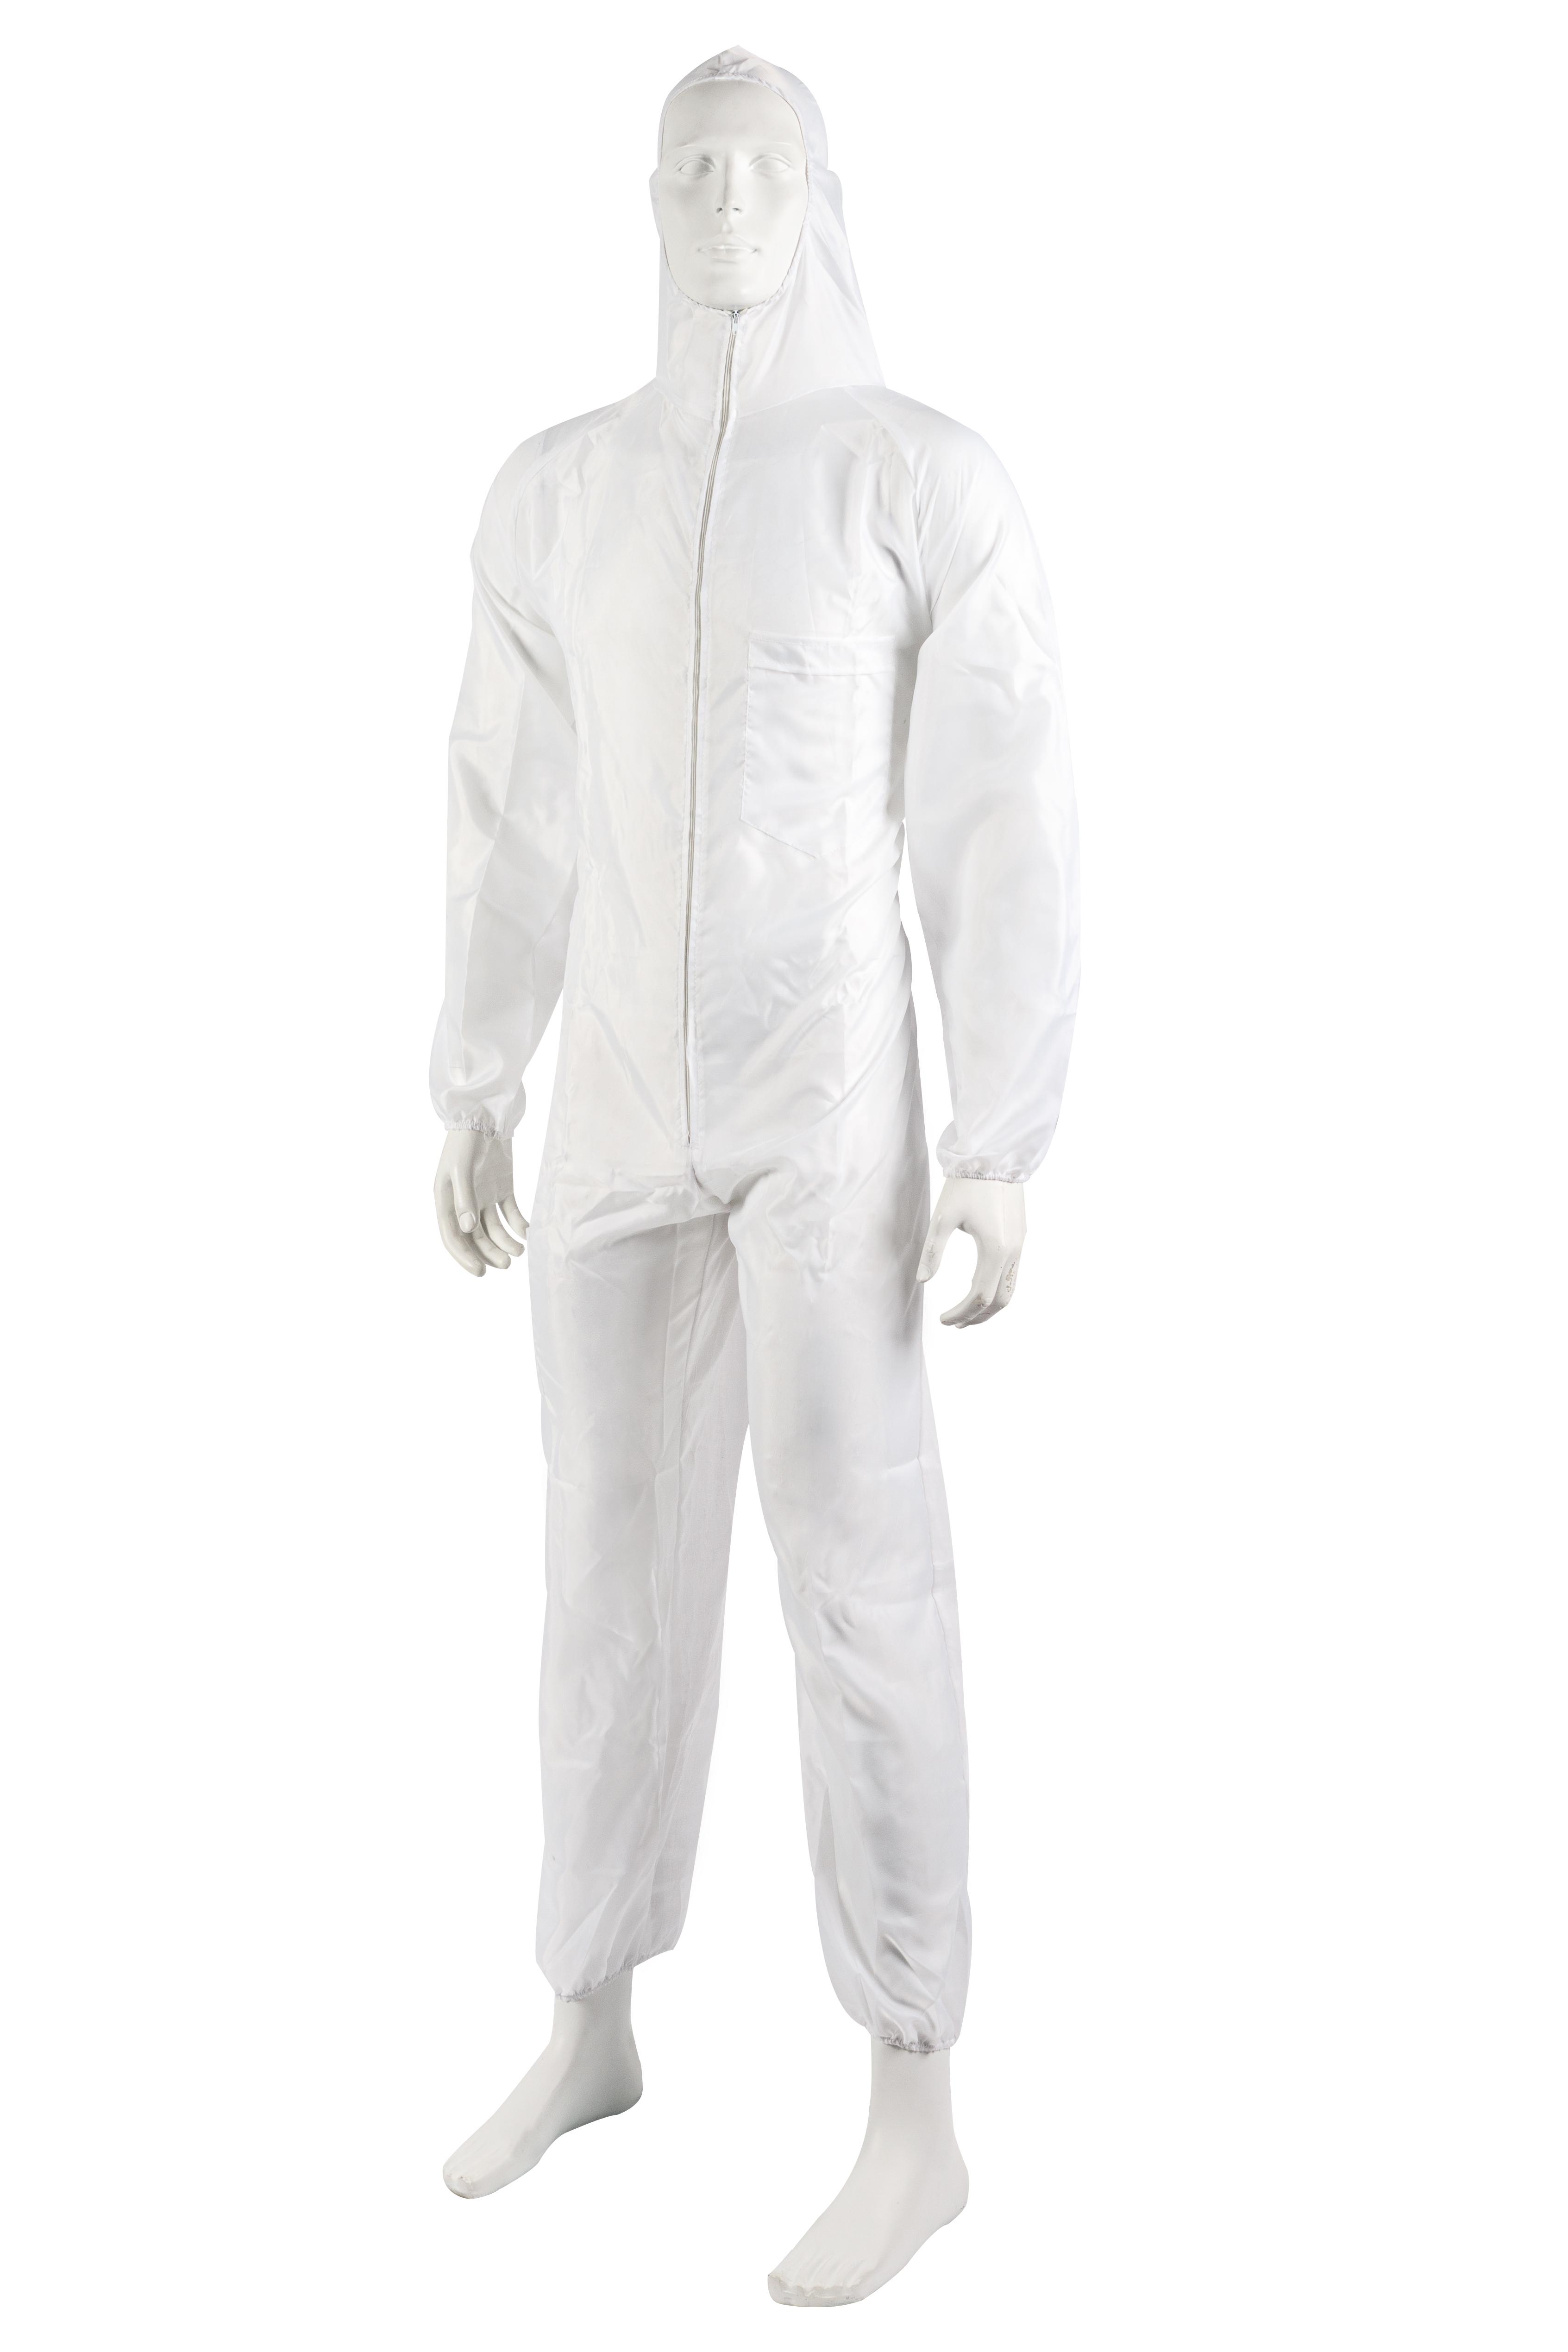 Lackieranzug Nylon-Baumwolle weiß mit Kapuze Größe XL wiederverwendbar | Anzug lackieren schützen Lack